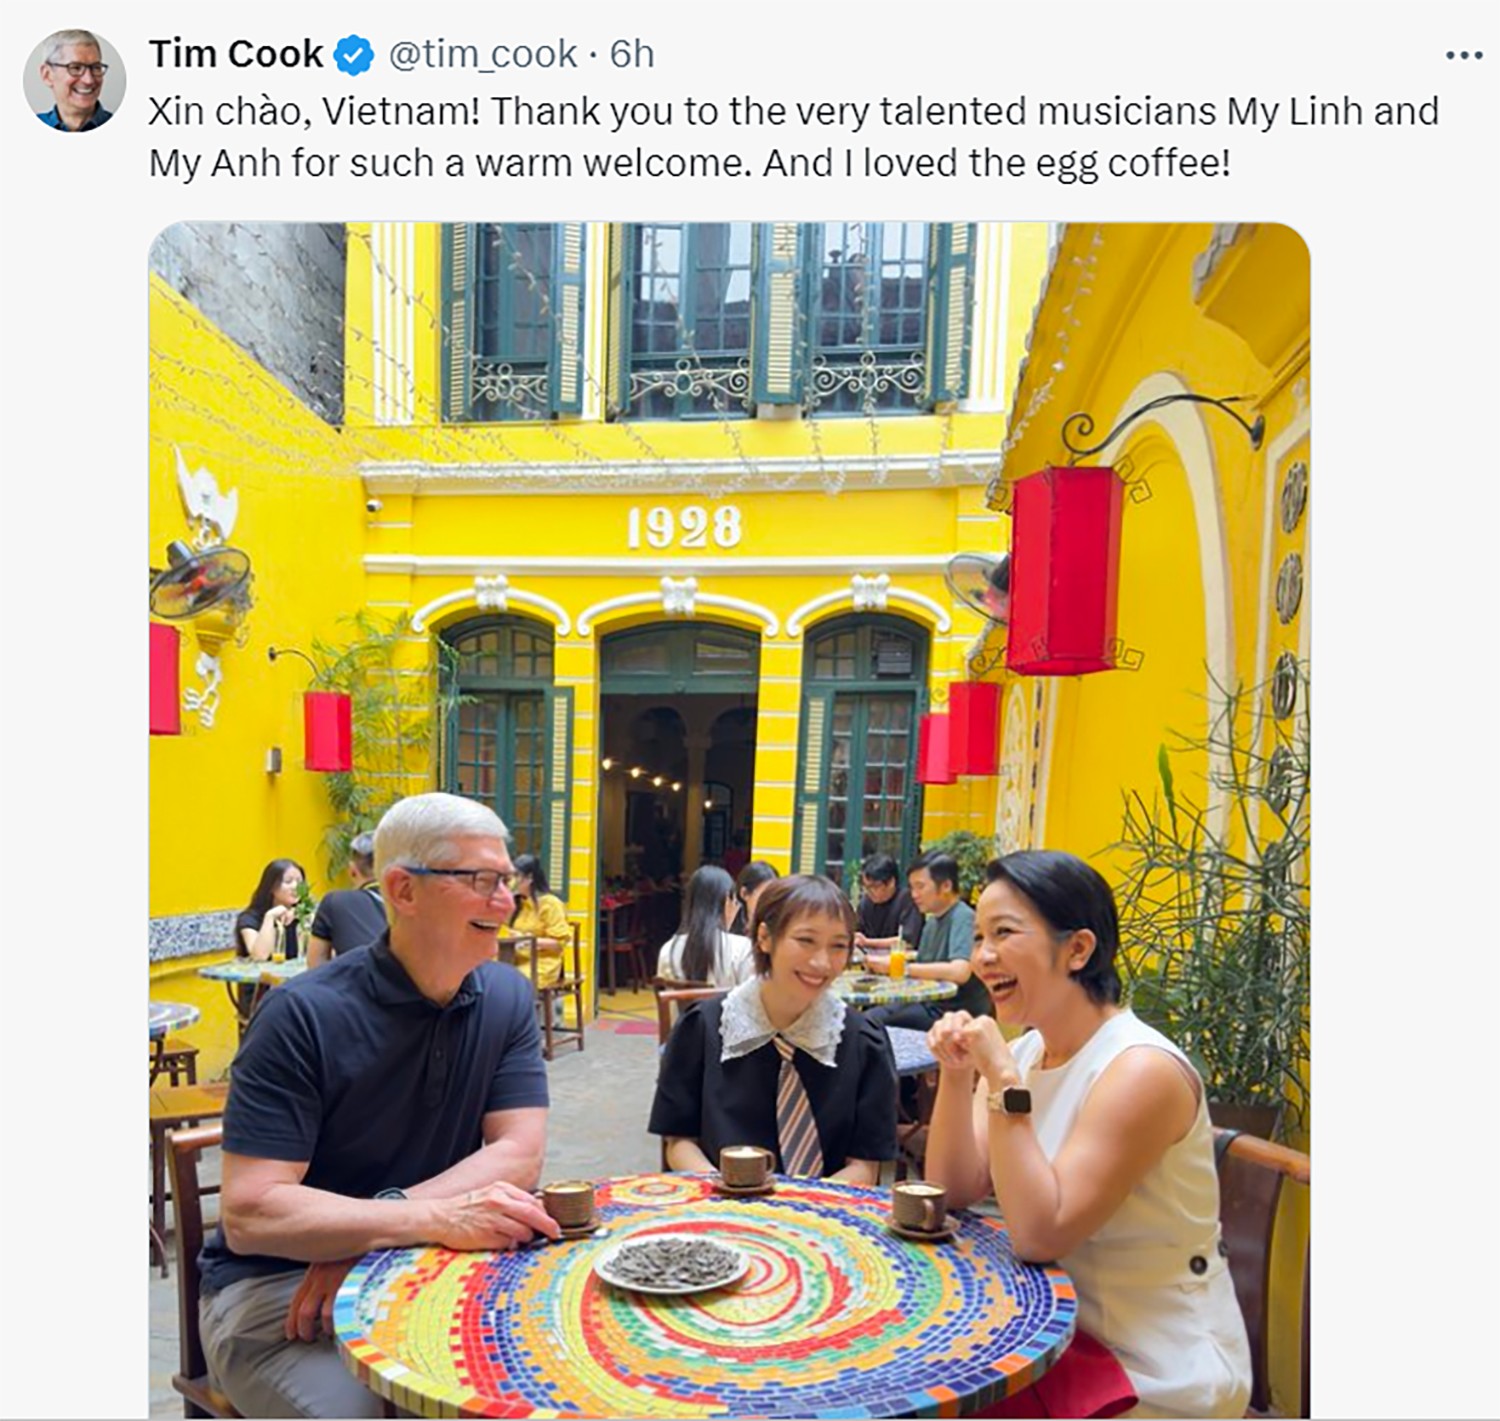 Sáng 15/4, Tim Cook - CEO Apple đã tới Hà Nội bằng chuyên cơ riêng. Sau khi tới Việt Nam, CEO Apple Tim Cook đã đăng dòng trạng thái: "Xin chào Việt Nam! Cảm ơn những nghệ sỹ tài năng Mỹ Linh và Mỹ Anh đã có buổi đón tiếp nồng hậu. Tôi cũng rất mê món cà phê trứng".